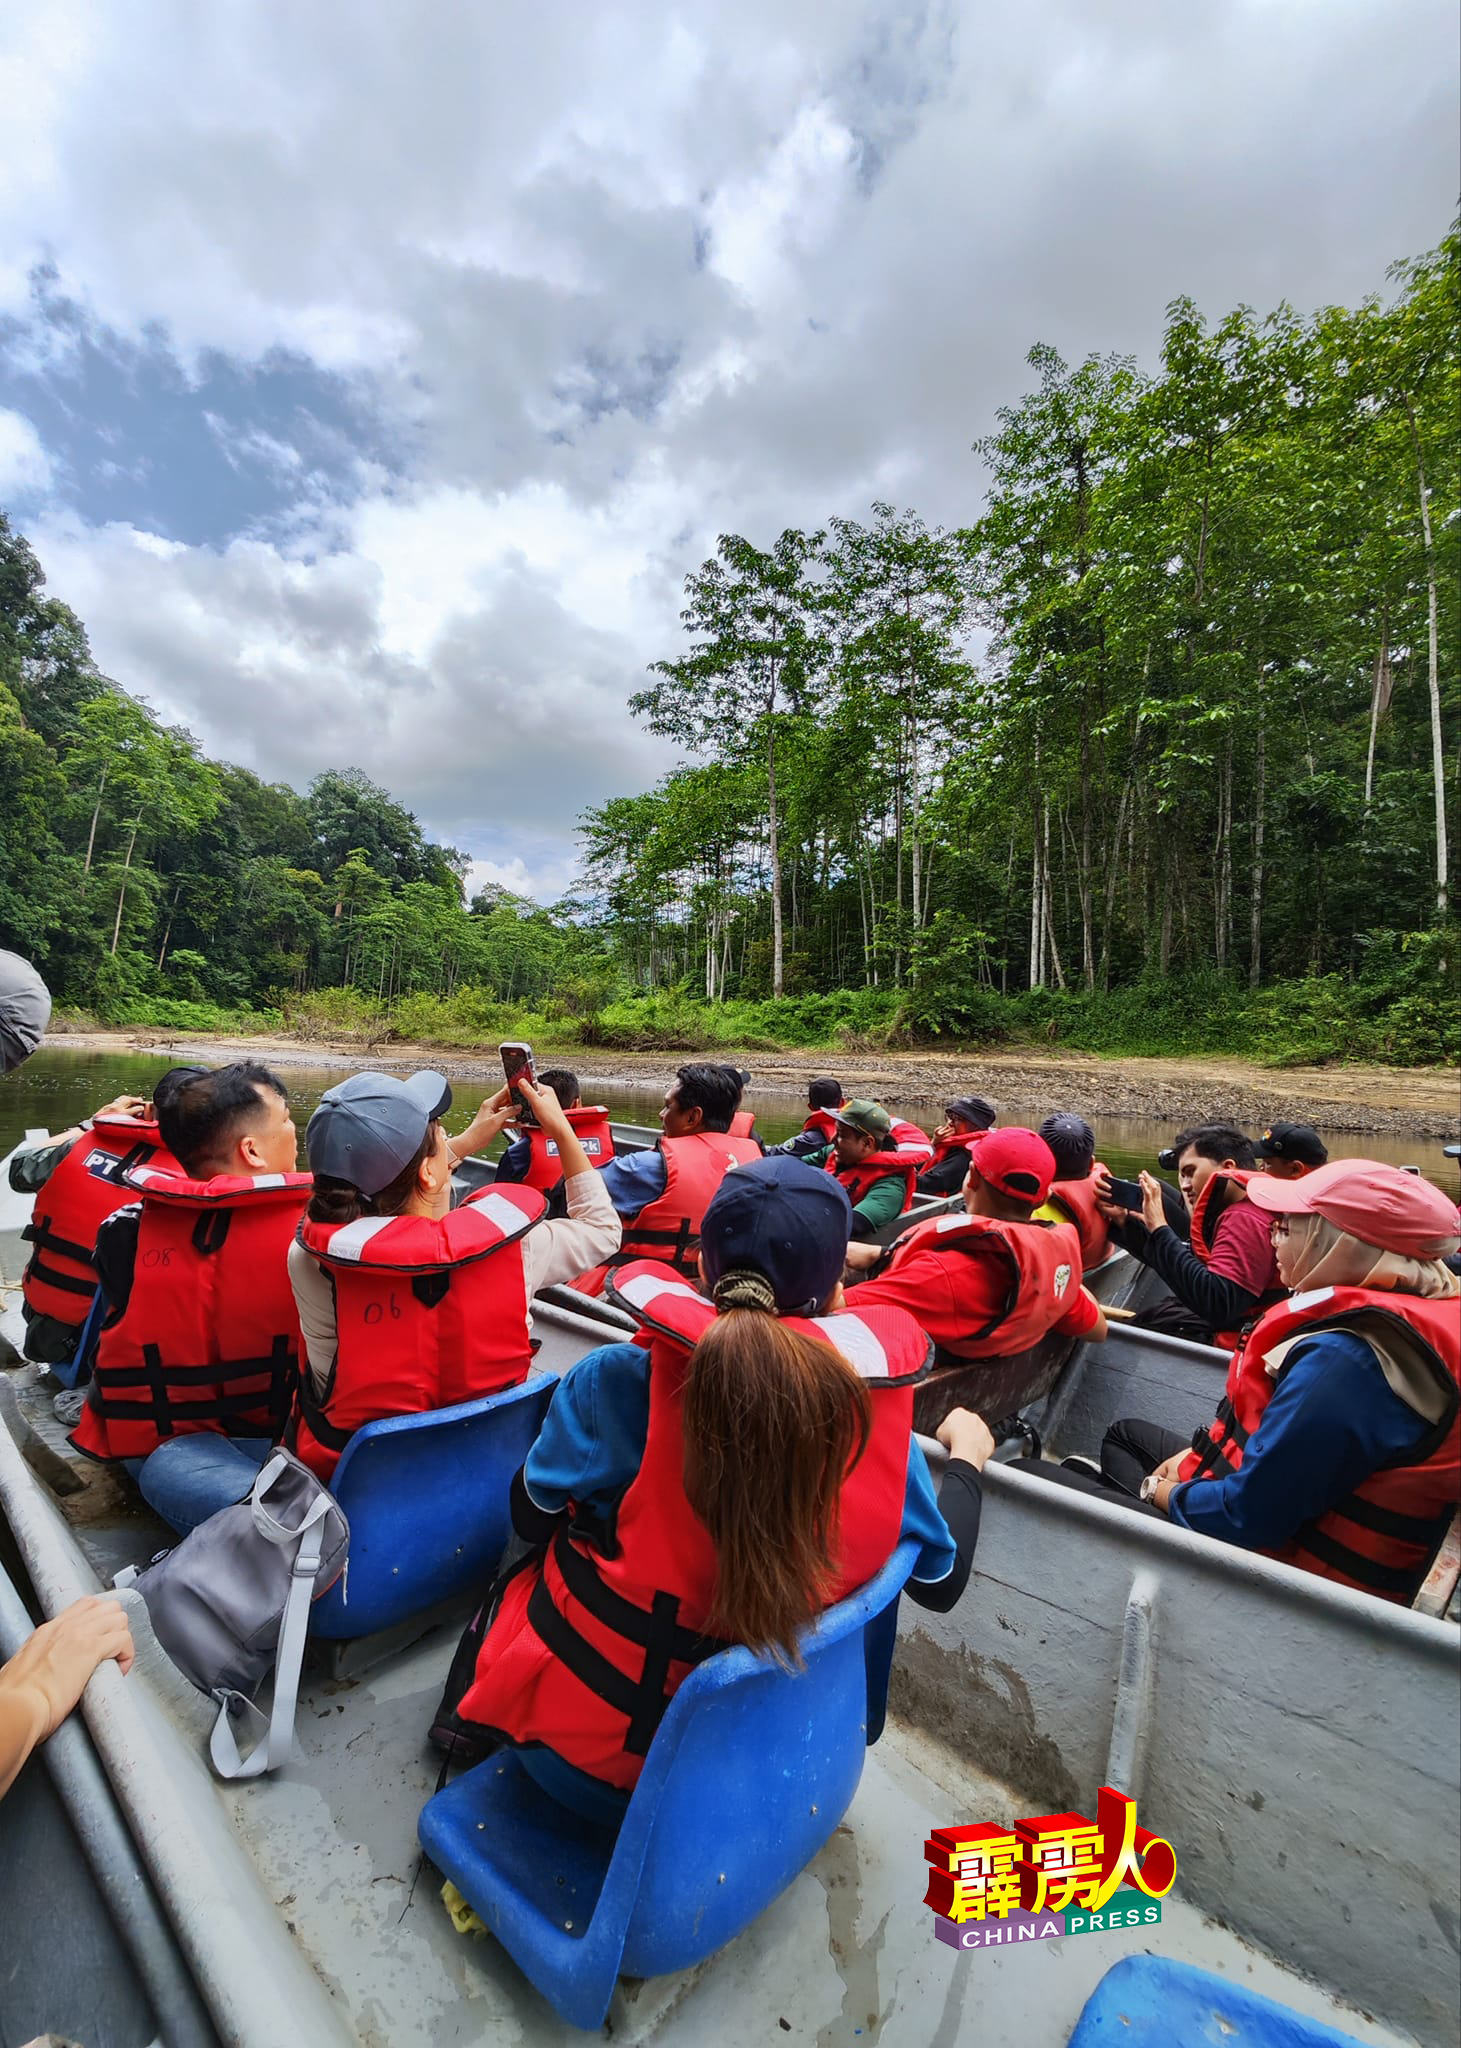 位于霹雳州北部，拥有超过1亿3000年悠久历史的柏隆皇家公园，是世界最古老的原始热带雨林之一，比亚马逊及刚果雨林更为古老。